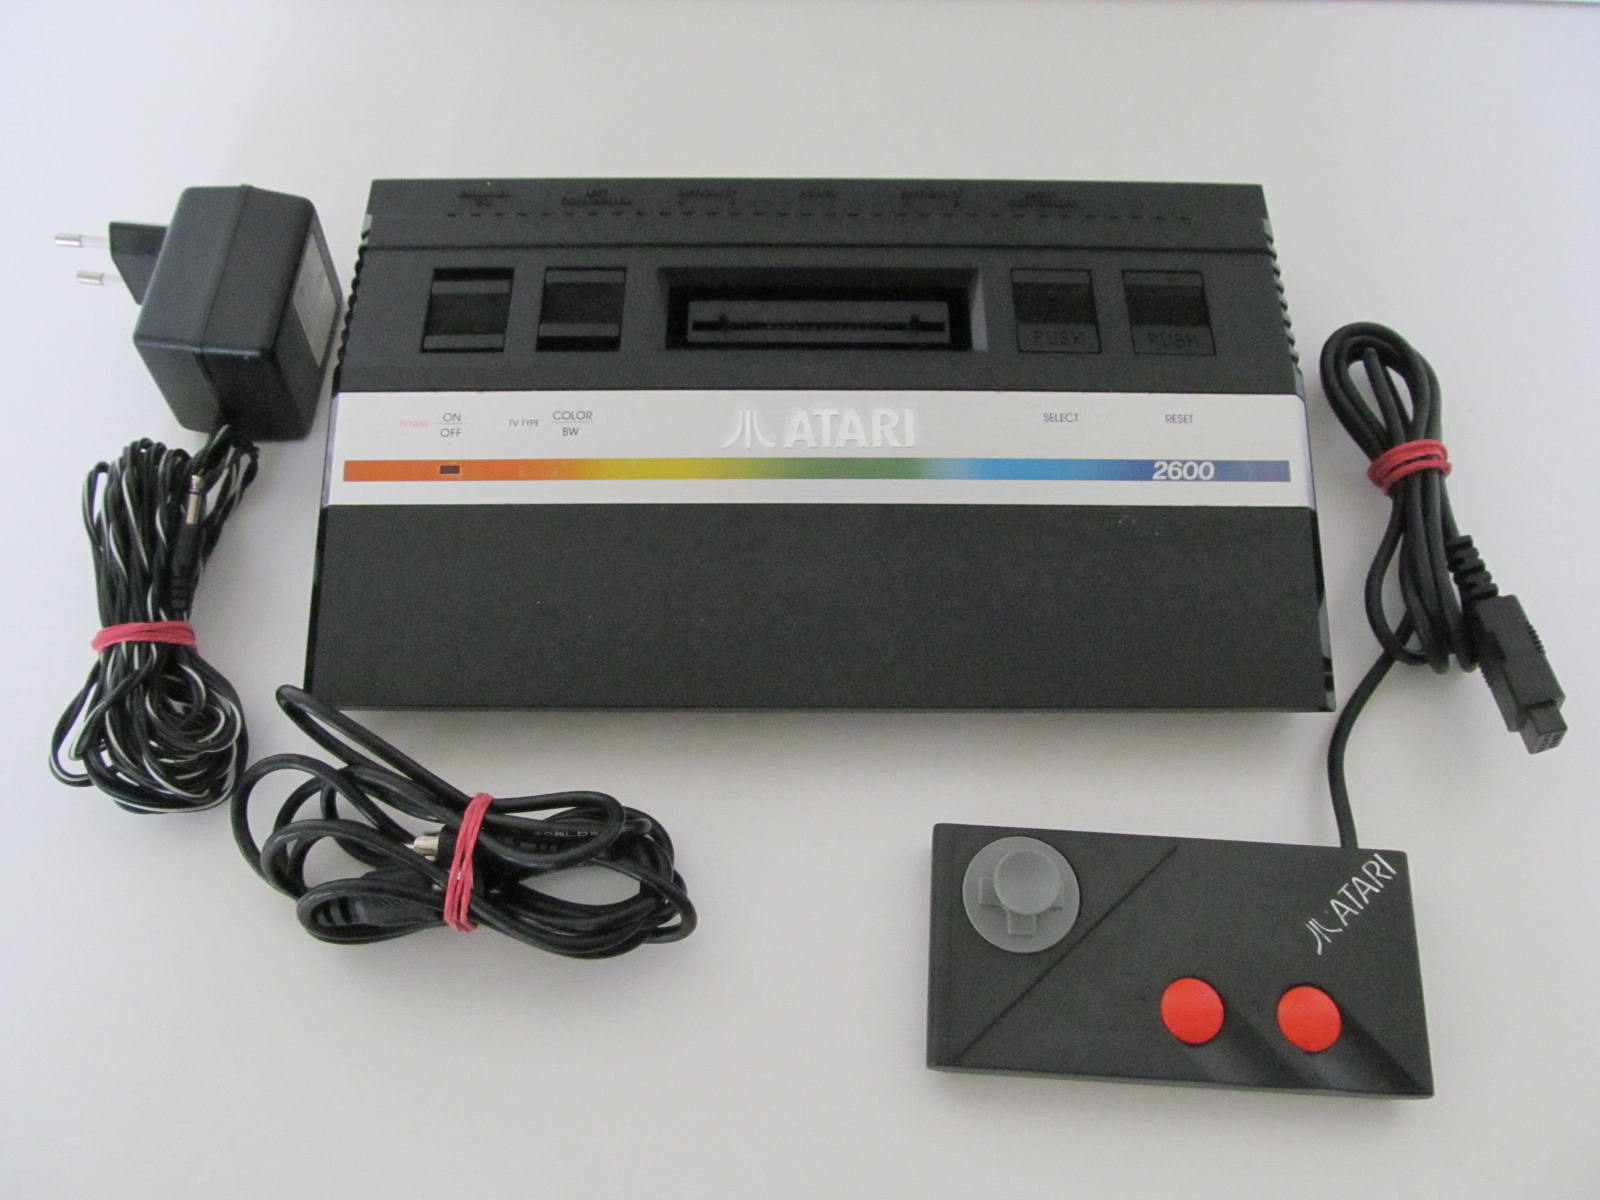 Atari 2600 Consoles Unboxed